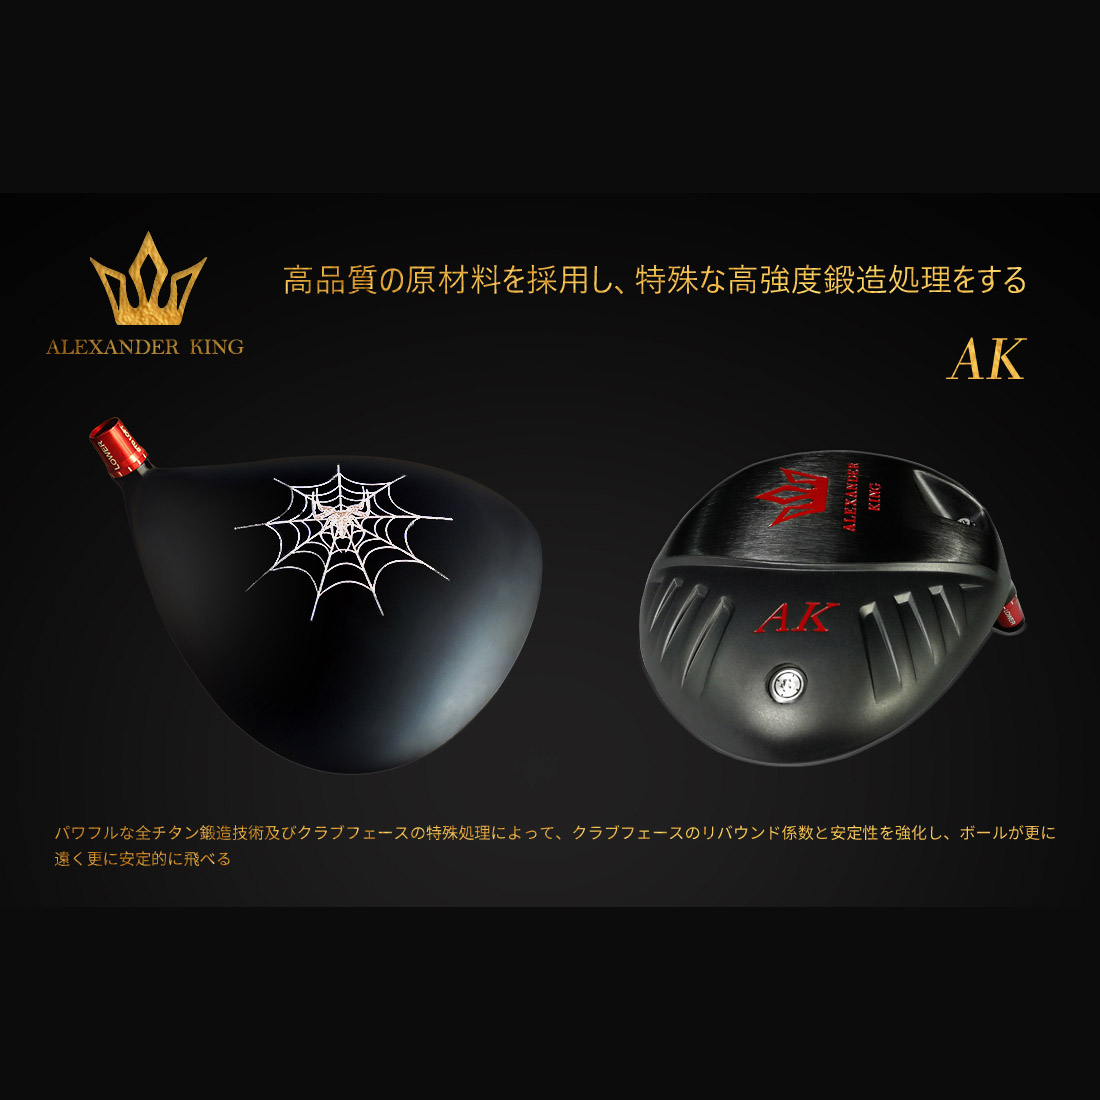 AK Kingbox+AK-001